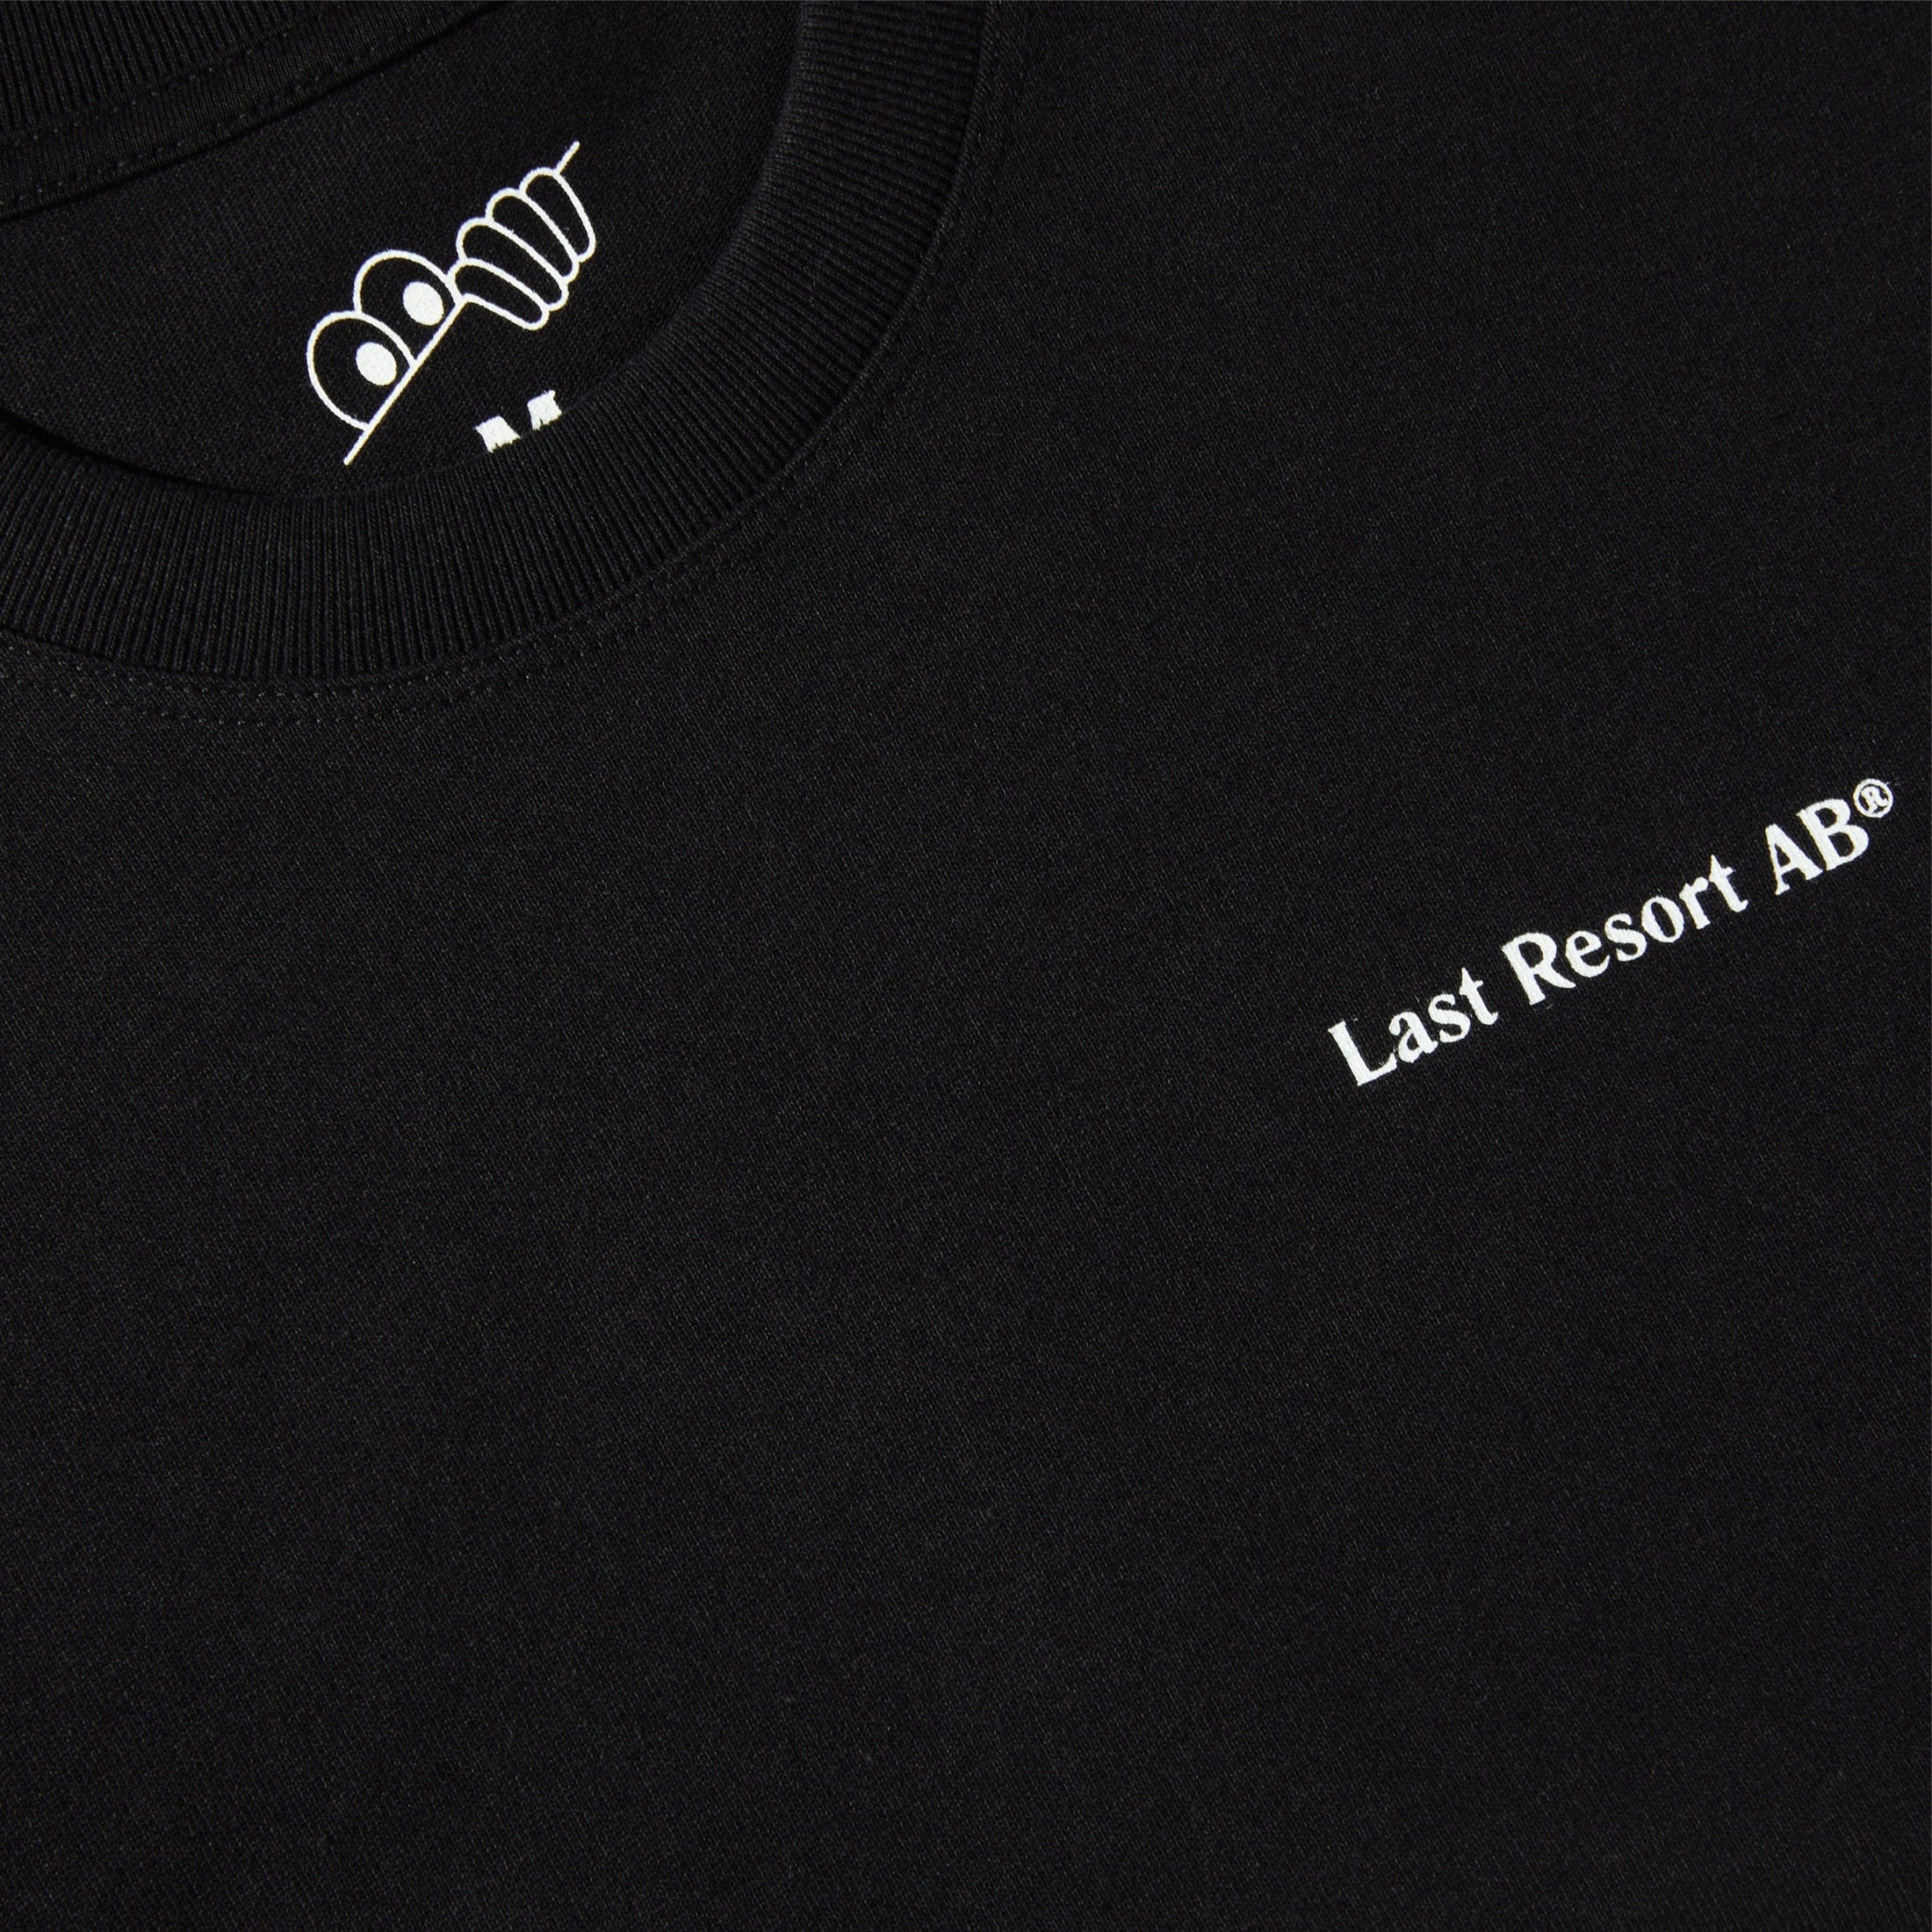 Last Resort AB Shadow T-Shirt Black